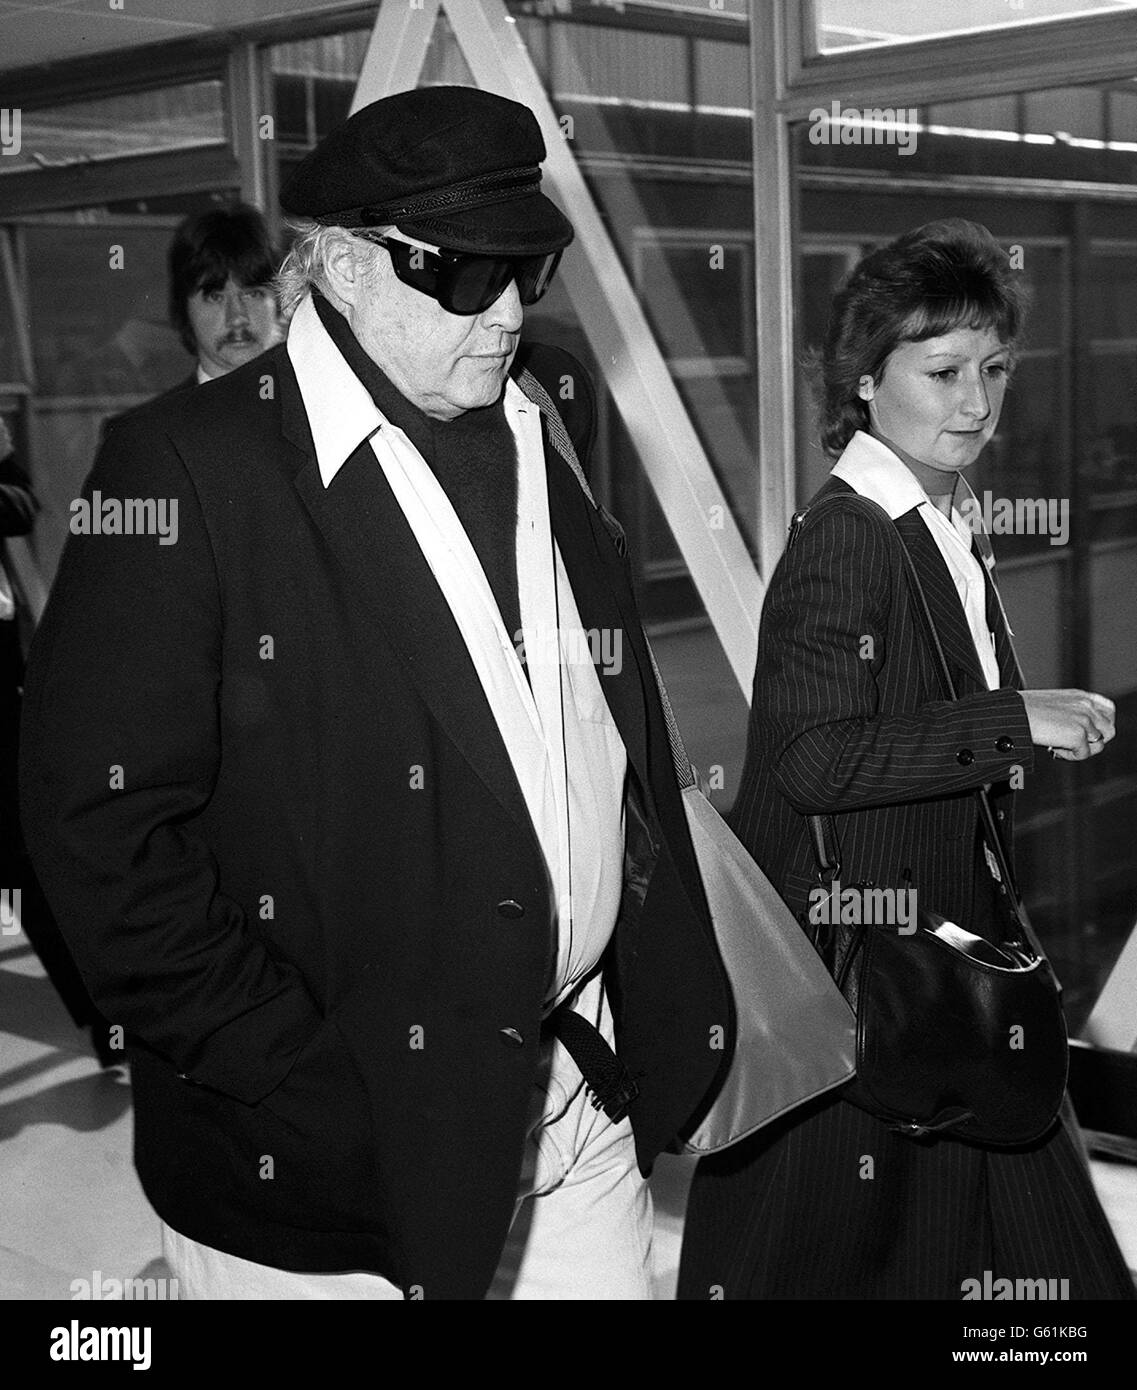 La star de cinéma Marlon Brando à l'aéroport de Heathrow aujourd'hui, qui se dirige vers le vol Concorde à destination de New York. CÉLÉBRITÉ Banque D'Images